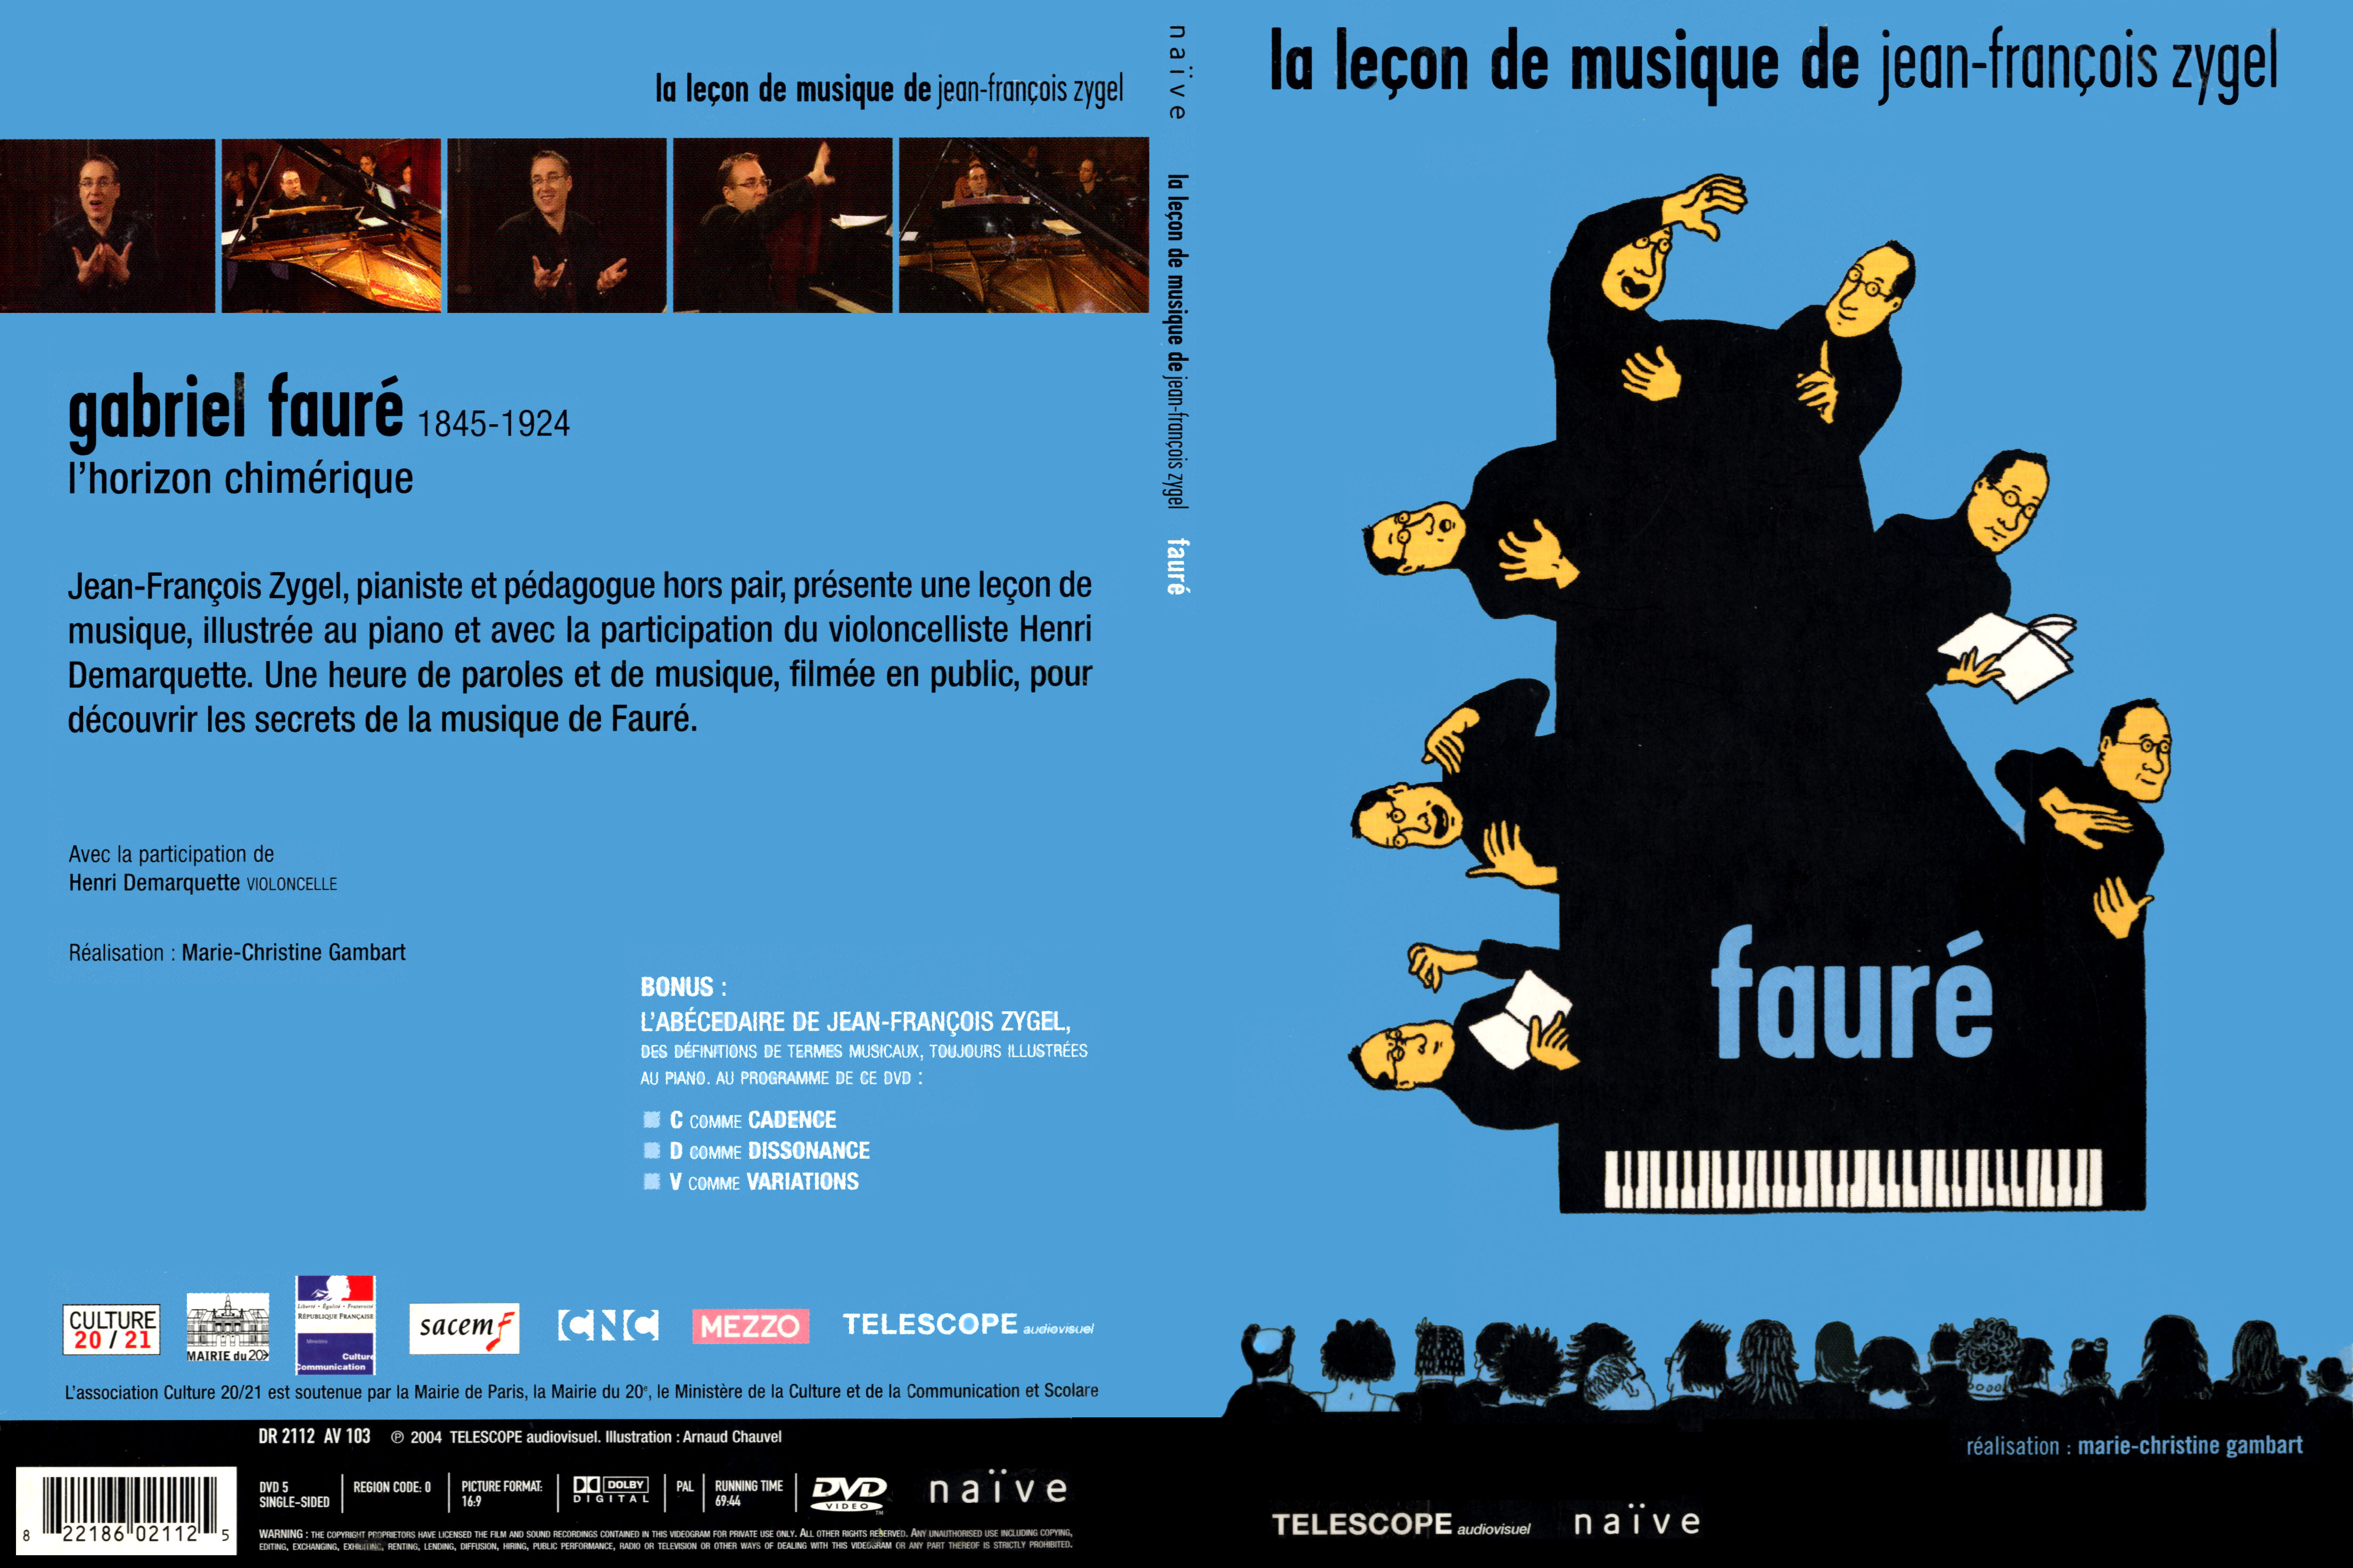 Jaquette DVD La lecon de musique de Jean-Francois Zygel - Faur